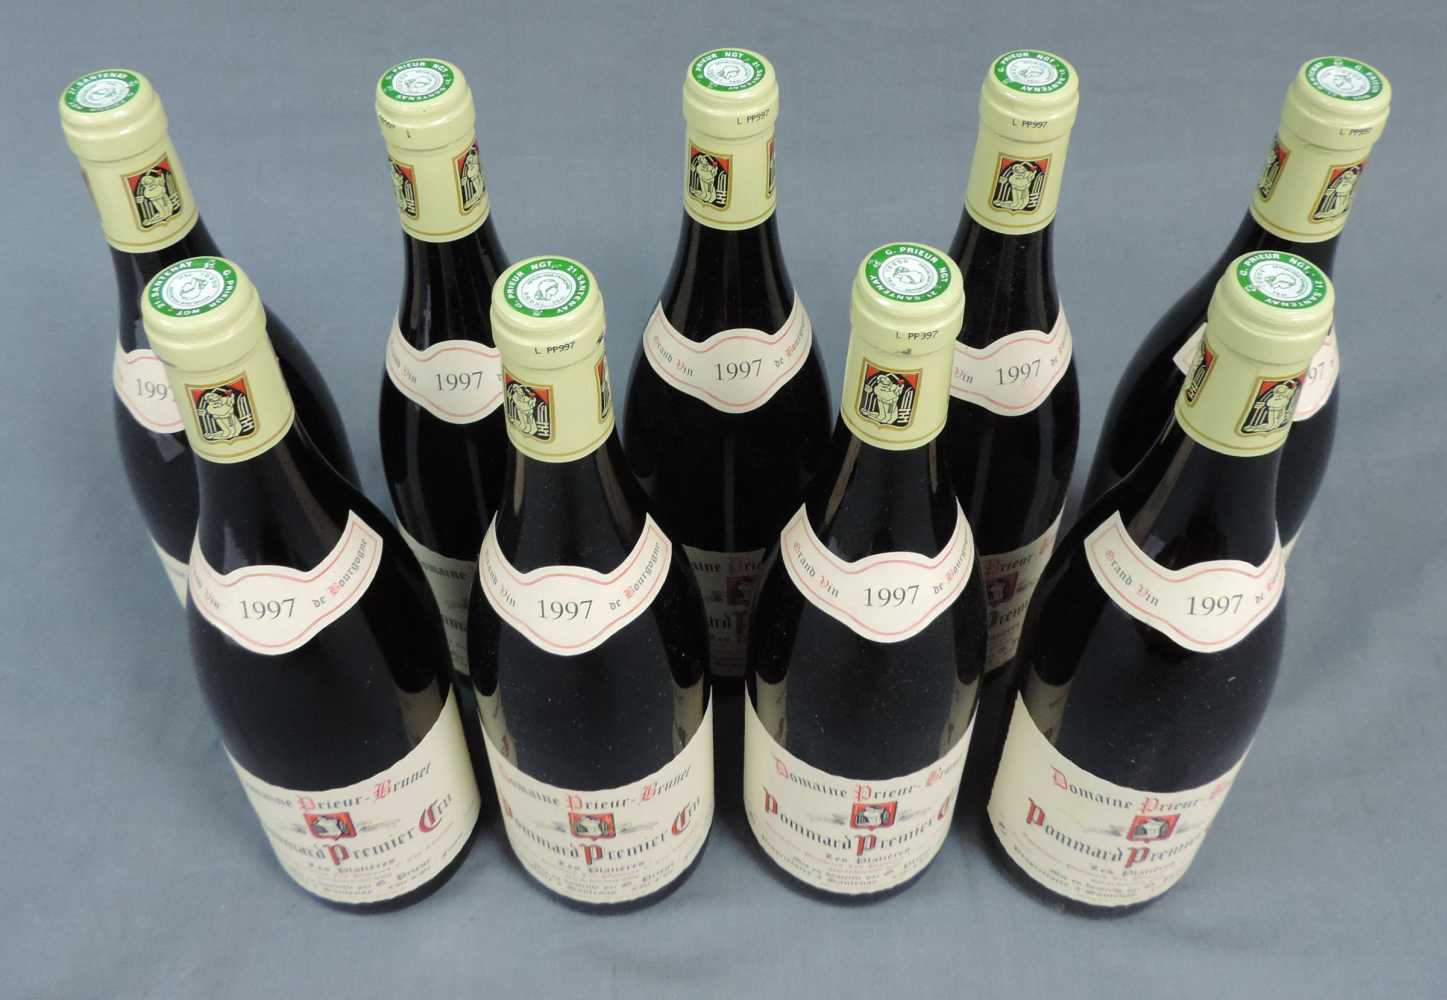 1997 Domaine Prieur - Brunet, Pommard Premier Cru Les Platieres, France. 9 Flaschen, 750 ml, Alc., - Image 3 of 6